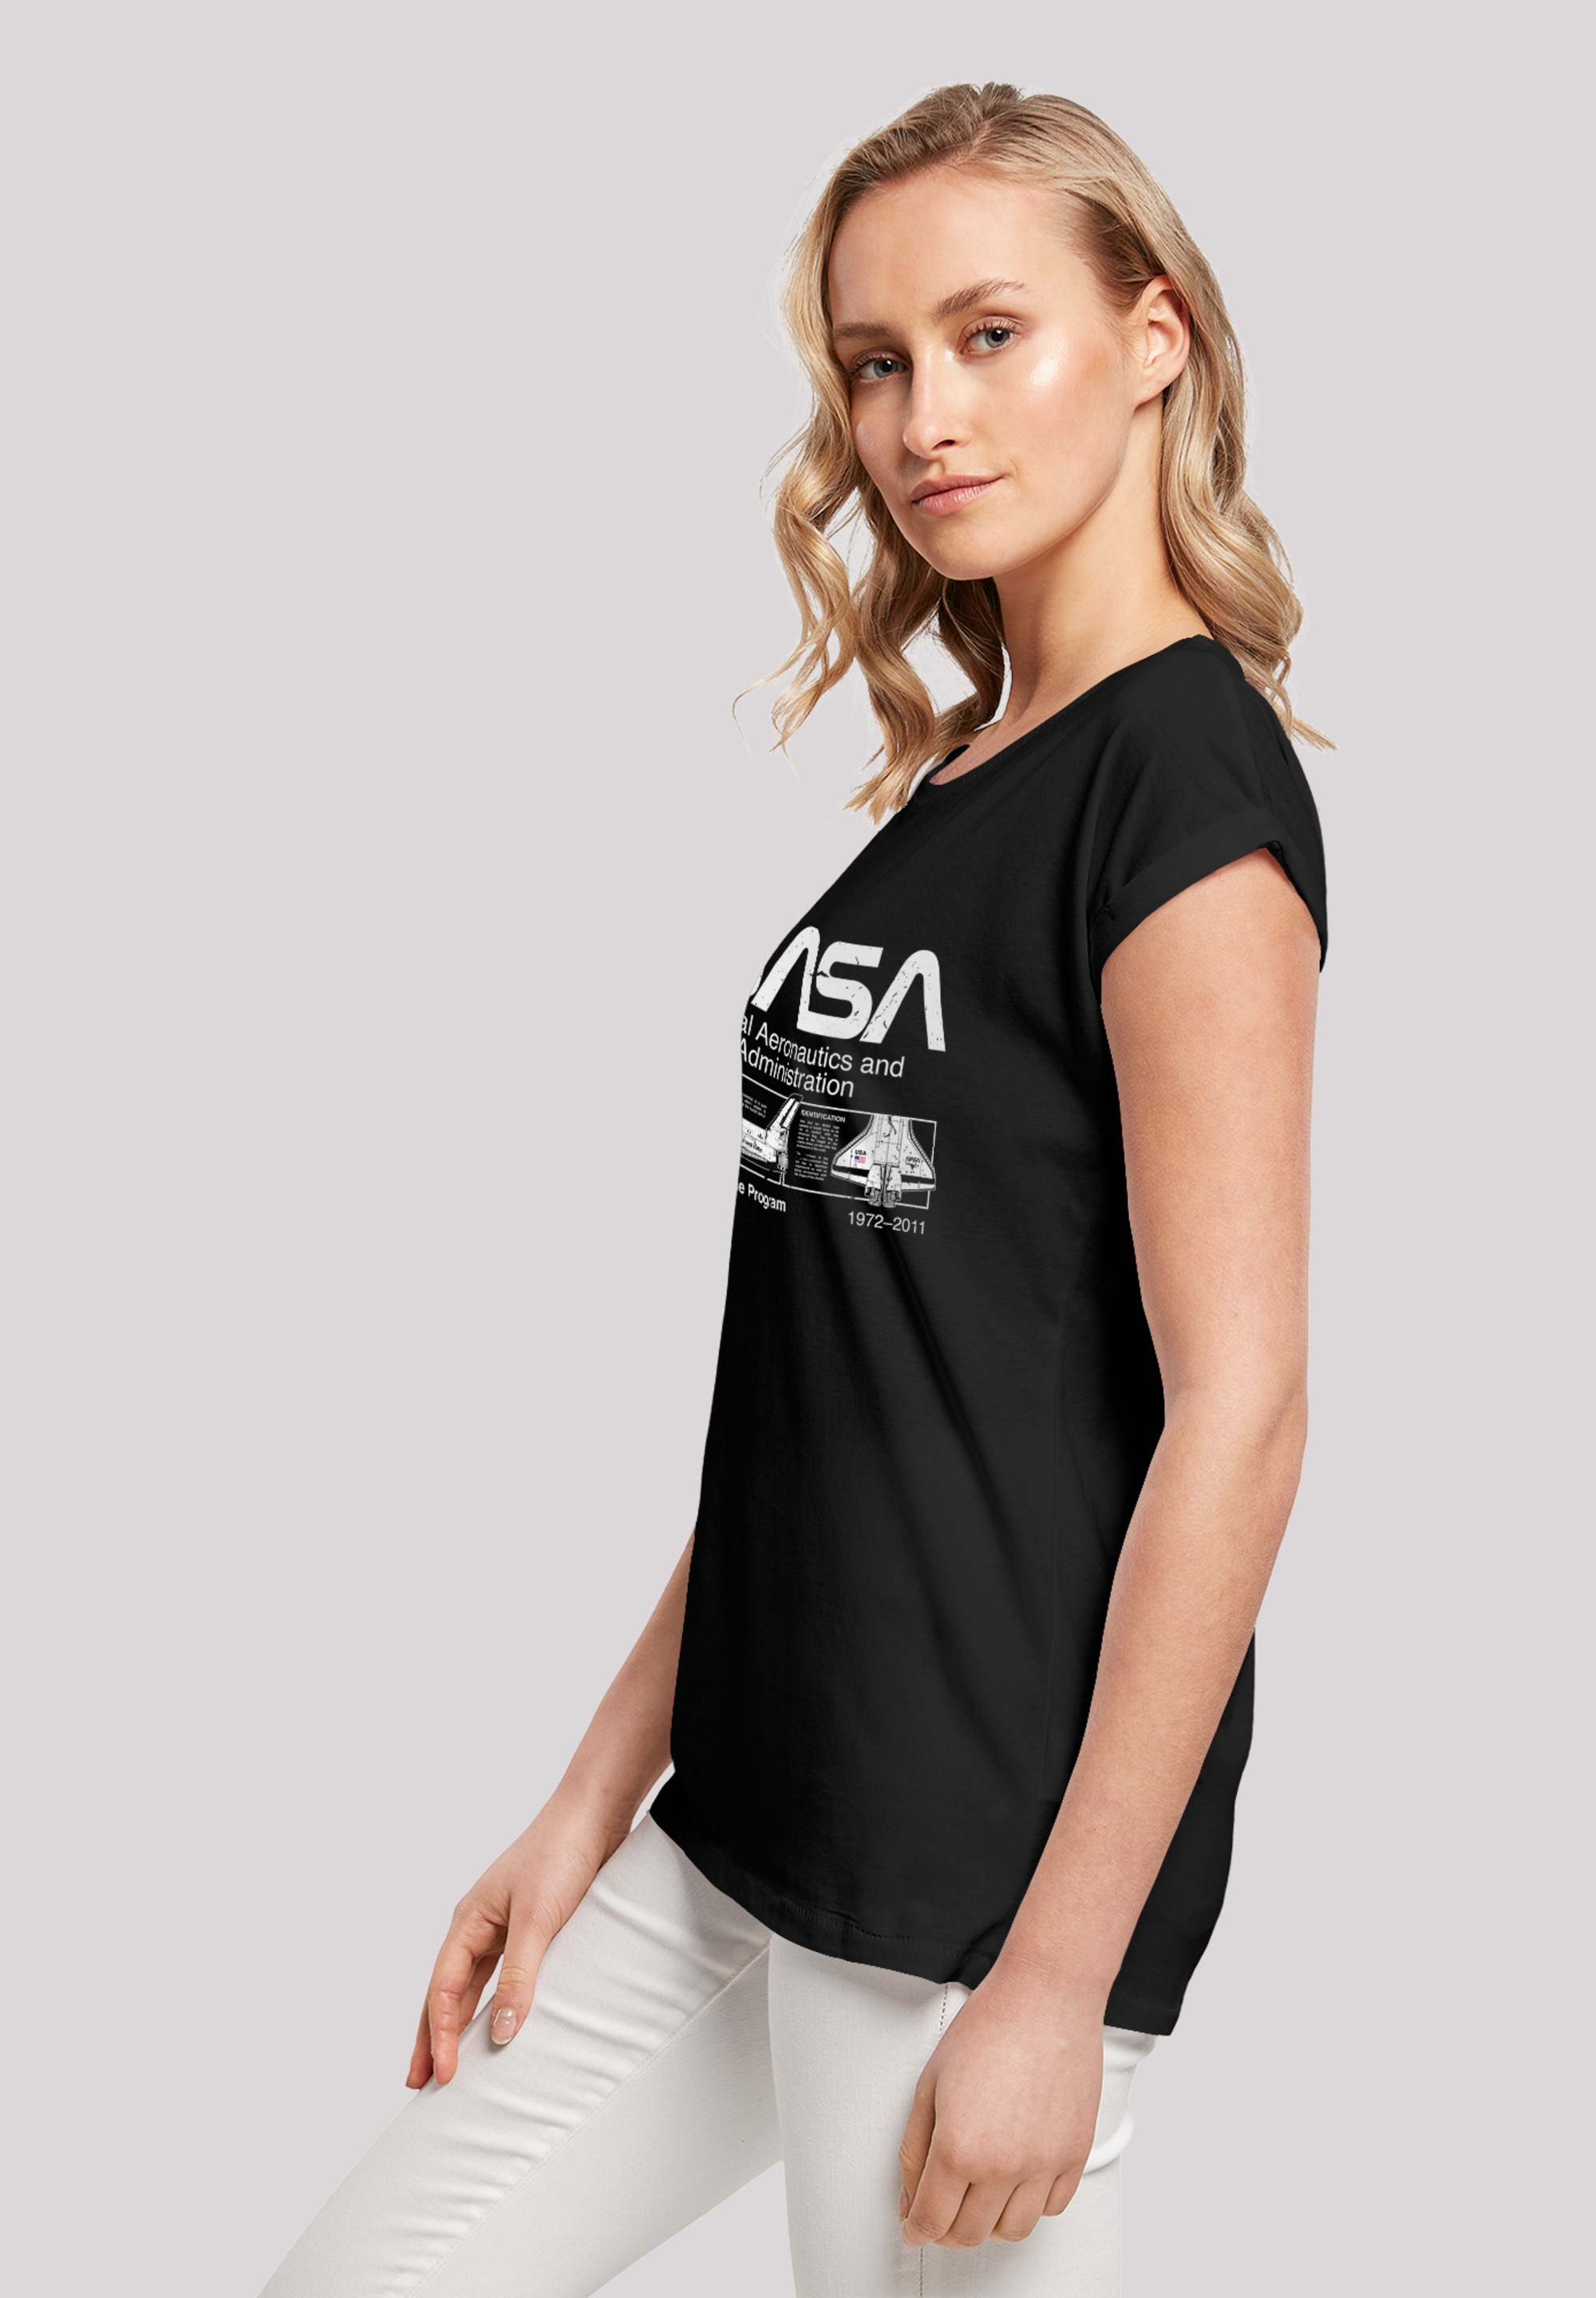 Black«, F4NT4STIC Classic Space BAUR T-Shirt bestellen Ärmel,Bedruckt Damen,Premium »NASA Shuttle | Merch,Regular-Fit,Kurze